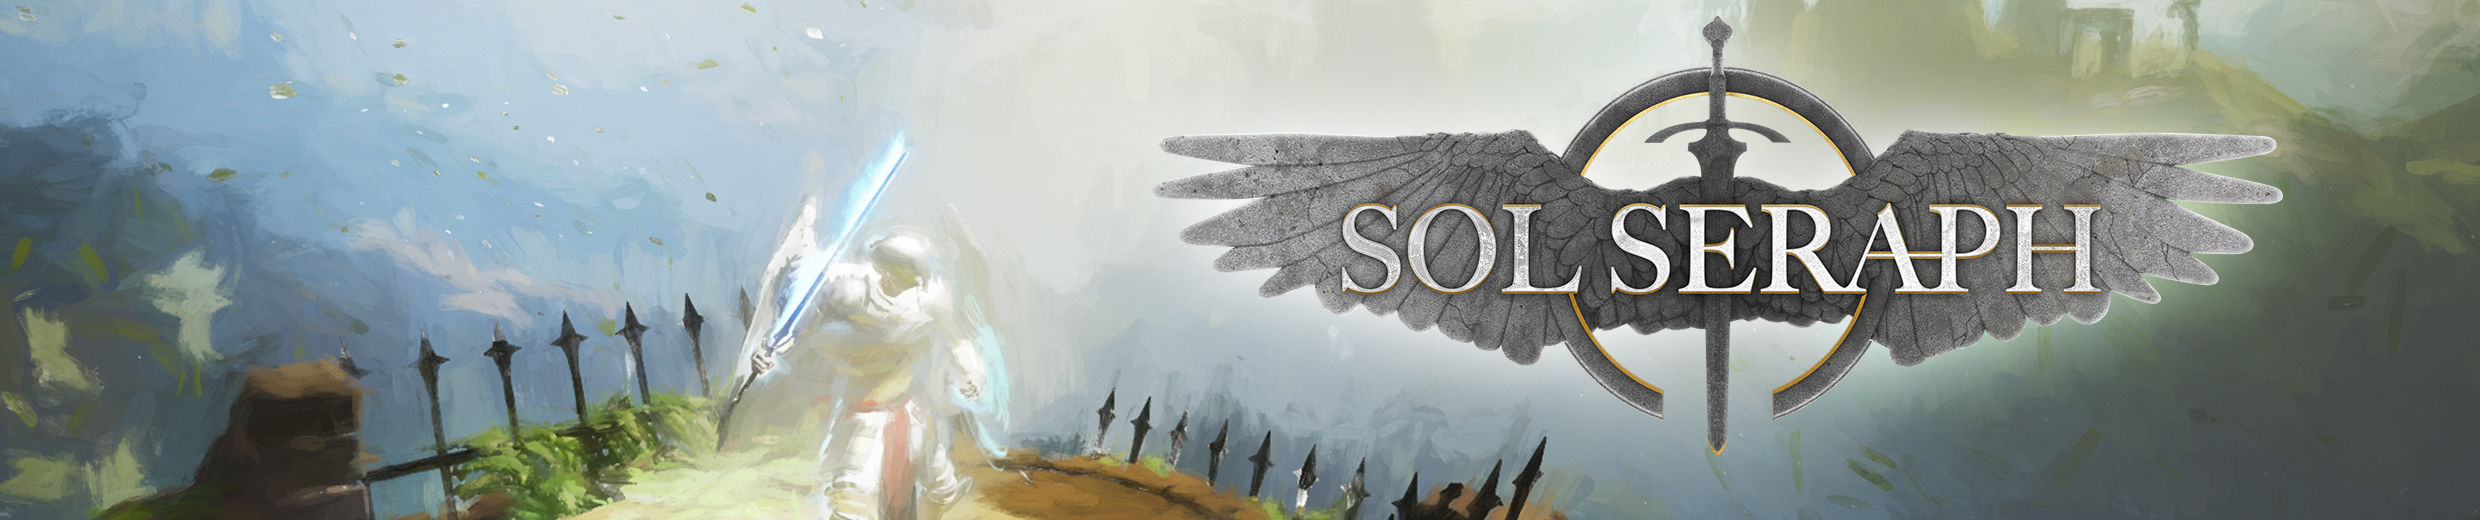 SolSeraph Announcement